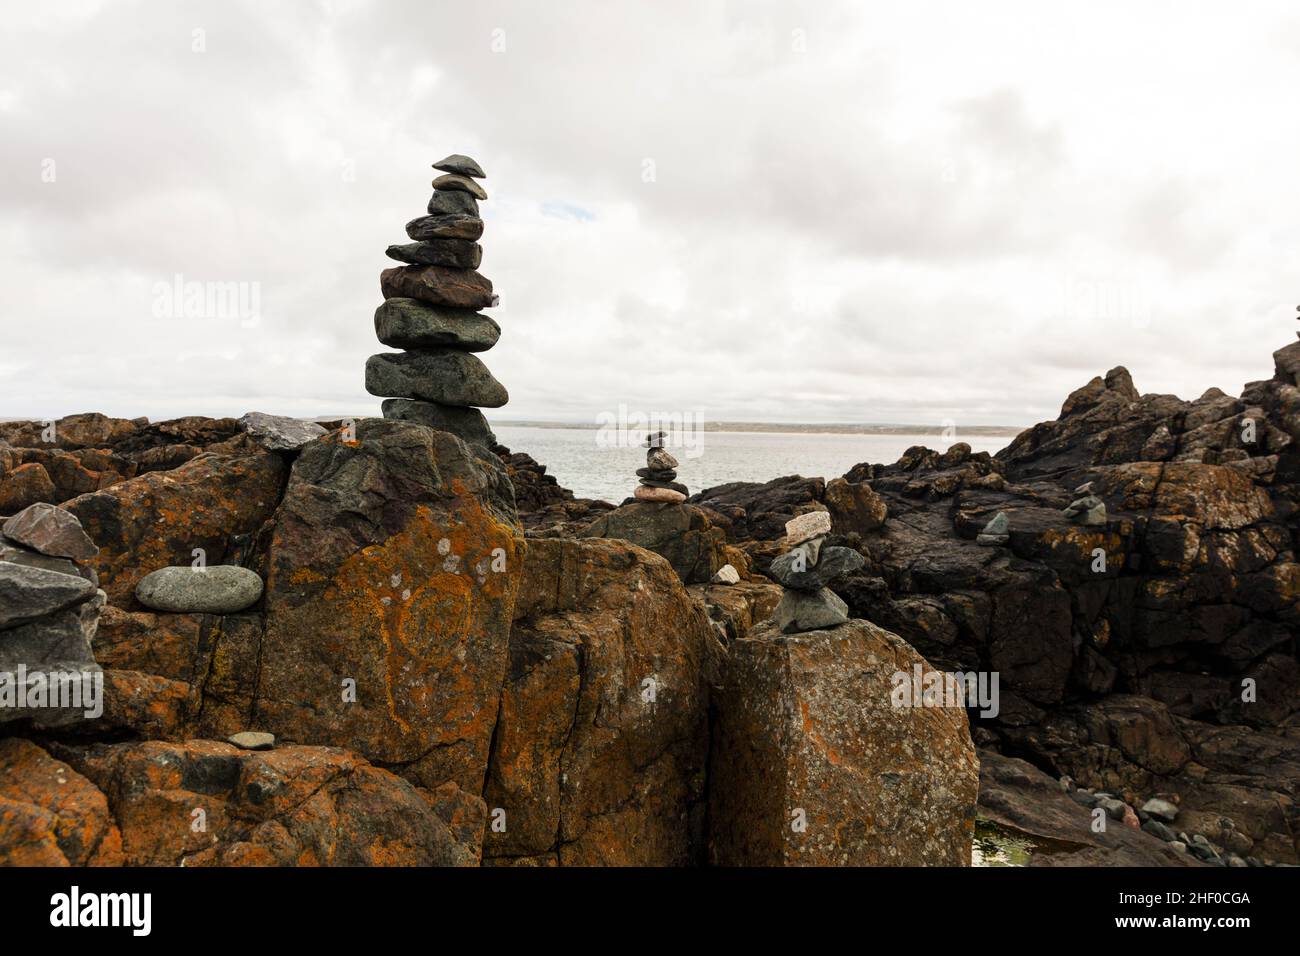 Balancing Act, Rock Cairns, rock cairn,St Ives, Cornwall, UK, England, rock balancing,balanced rocks, balanced stones,cairn,cairns, metaphor, life, Stock Photo